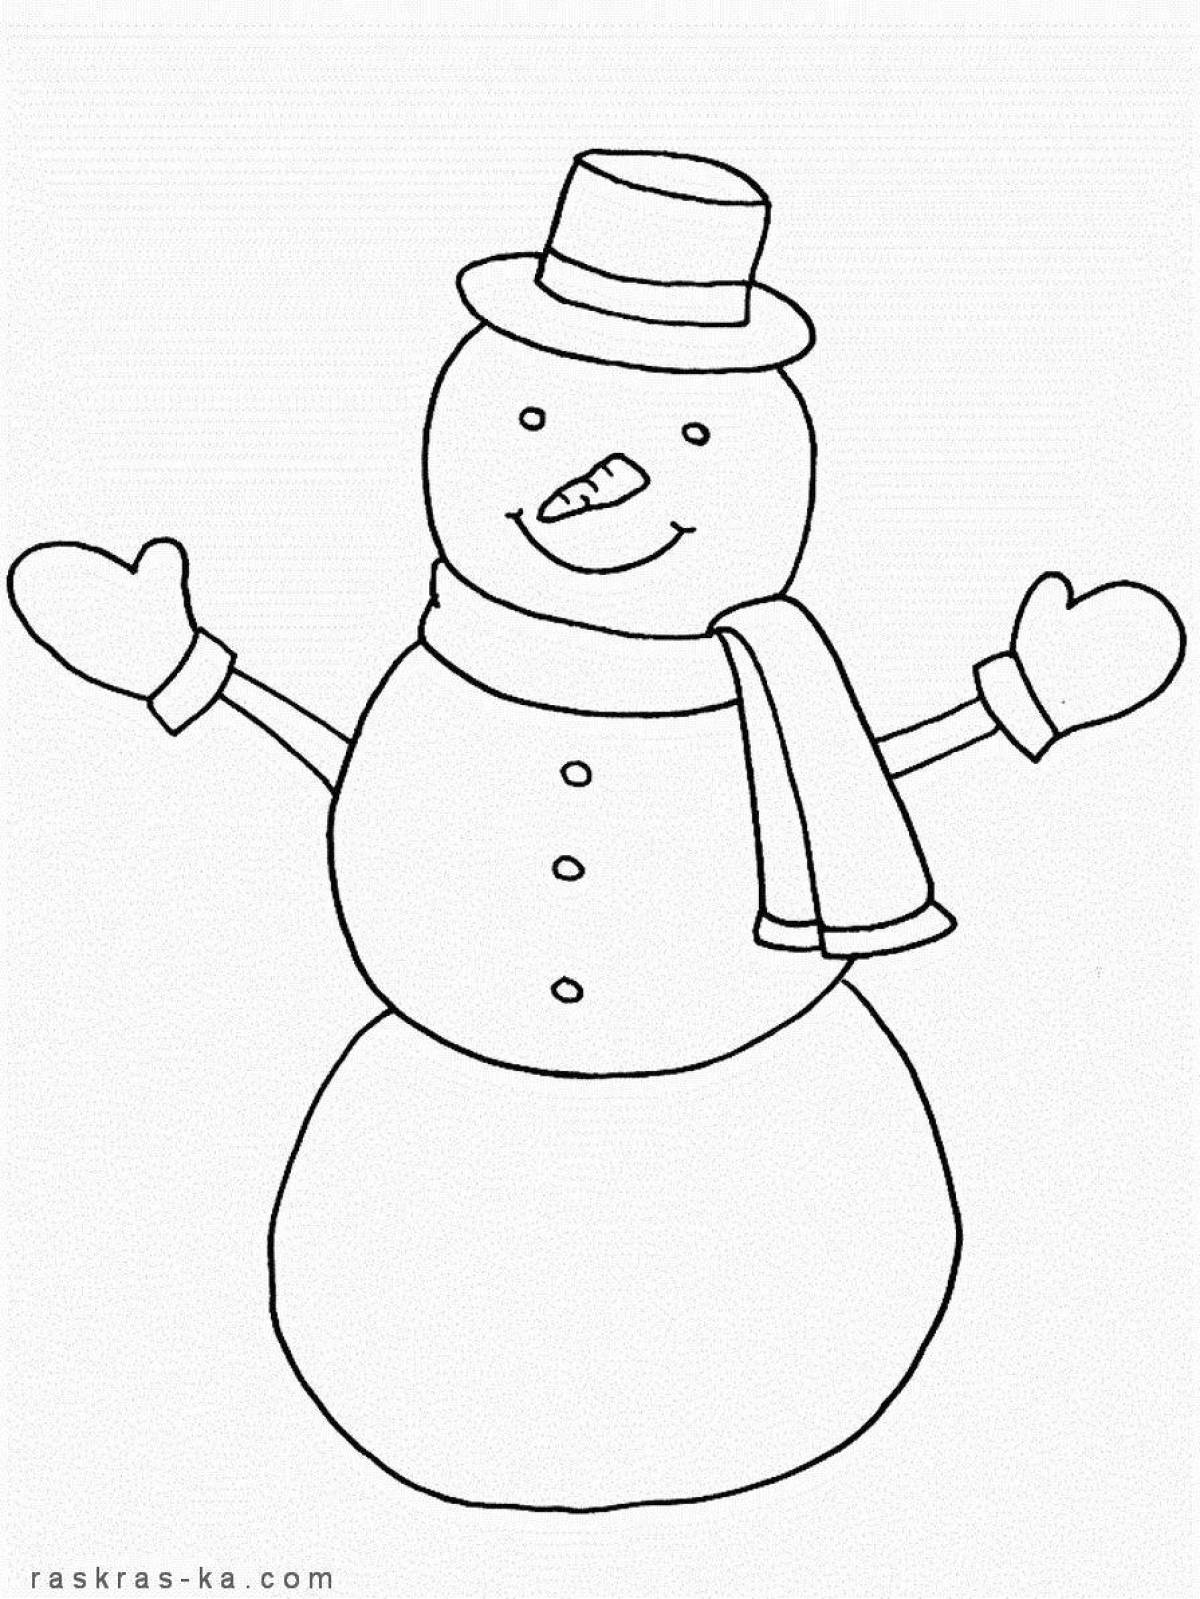 Стильная раскраска снеговик для детей 5 6